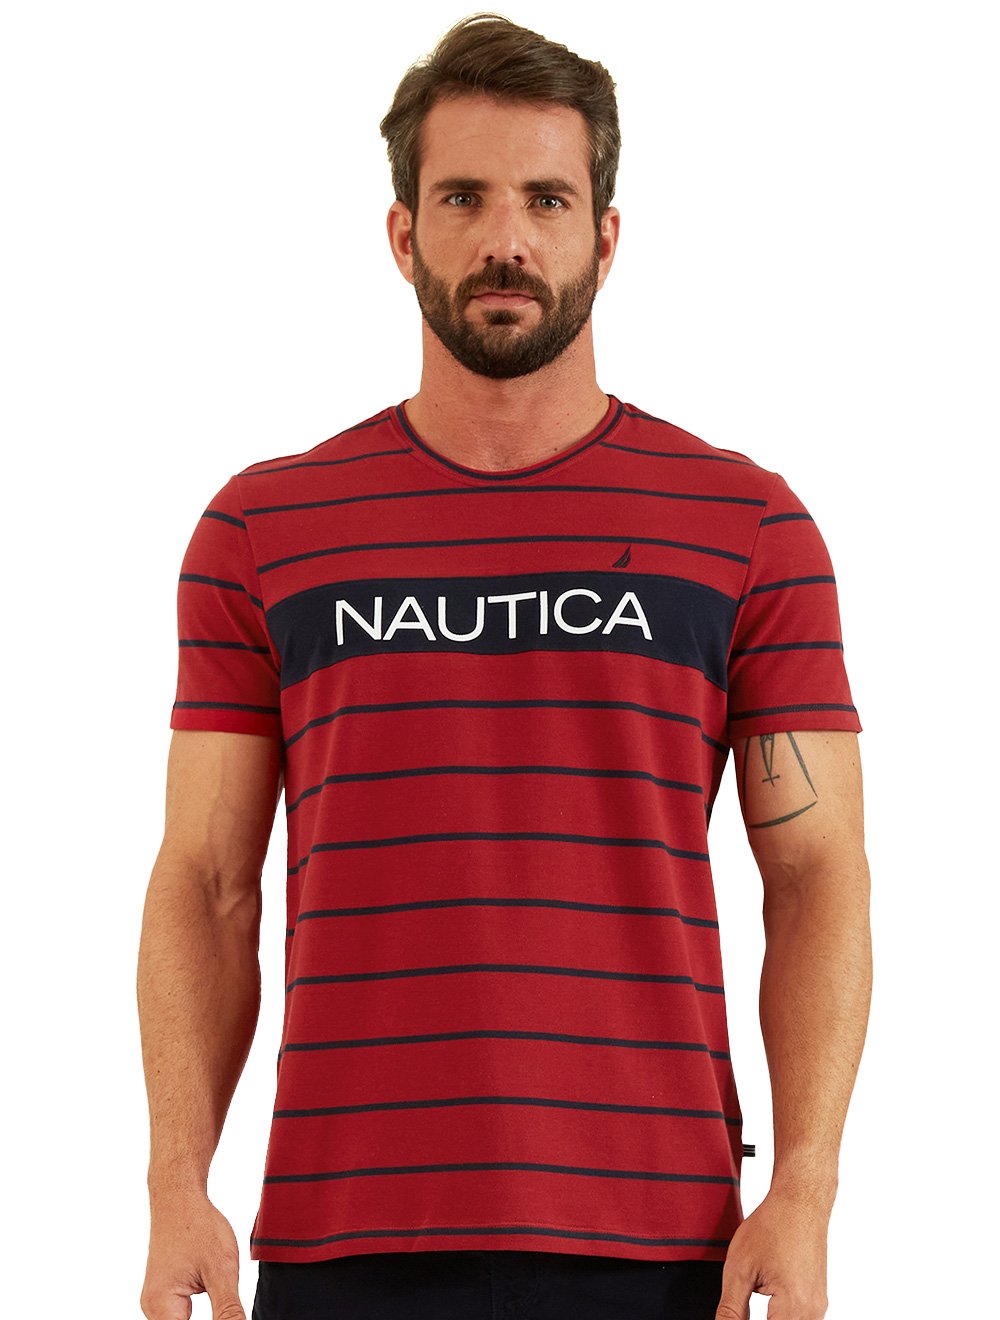 Camiseta Nautica Masculina Piquet Navy Stripes Patch Vermelha